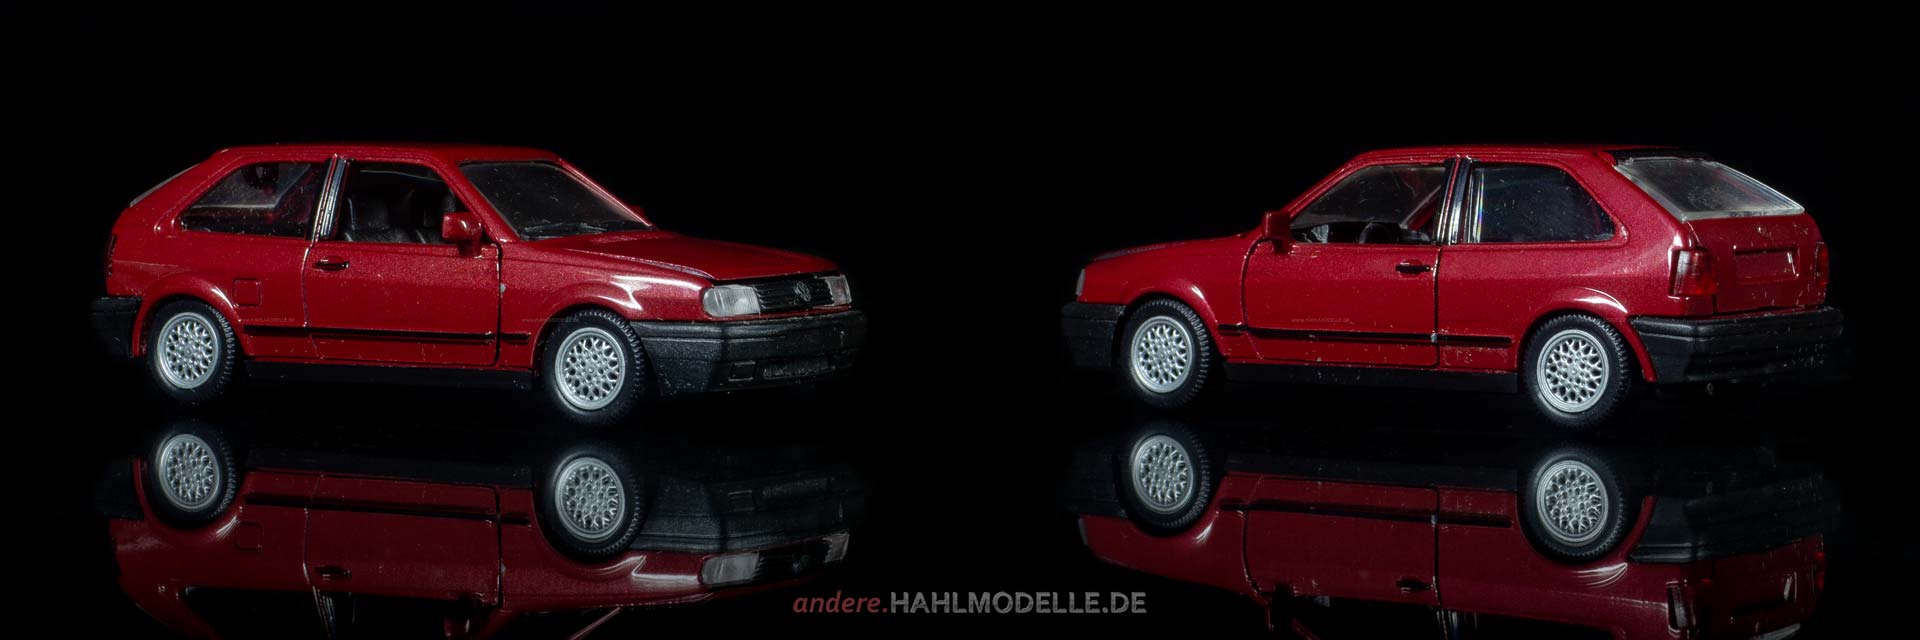 Volkswagen Polo II | Coupé | Schabak | 1:43 | www.andere.hahlmodelle.de